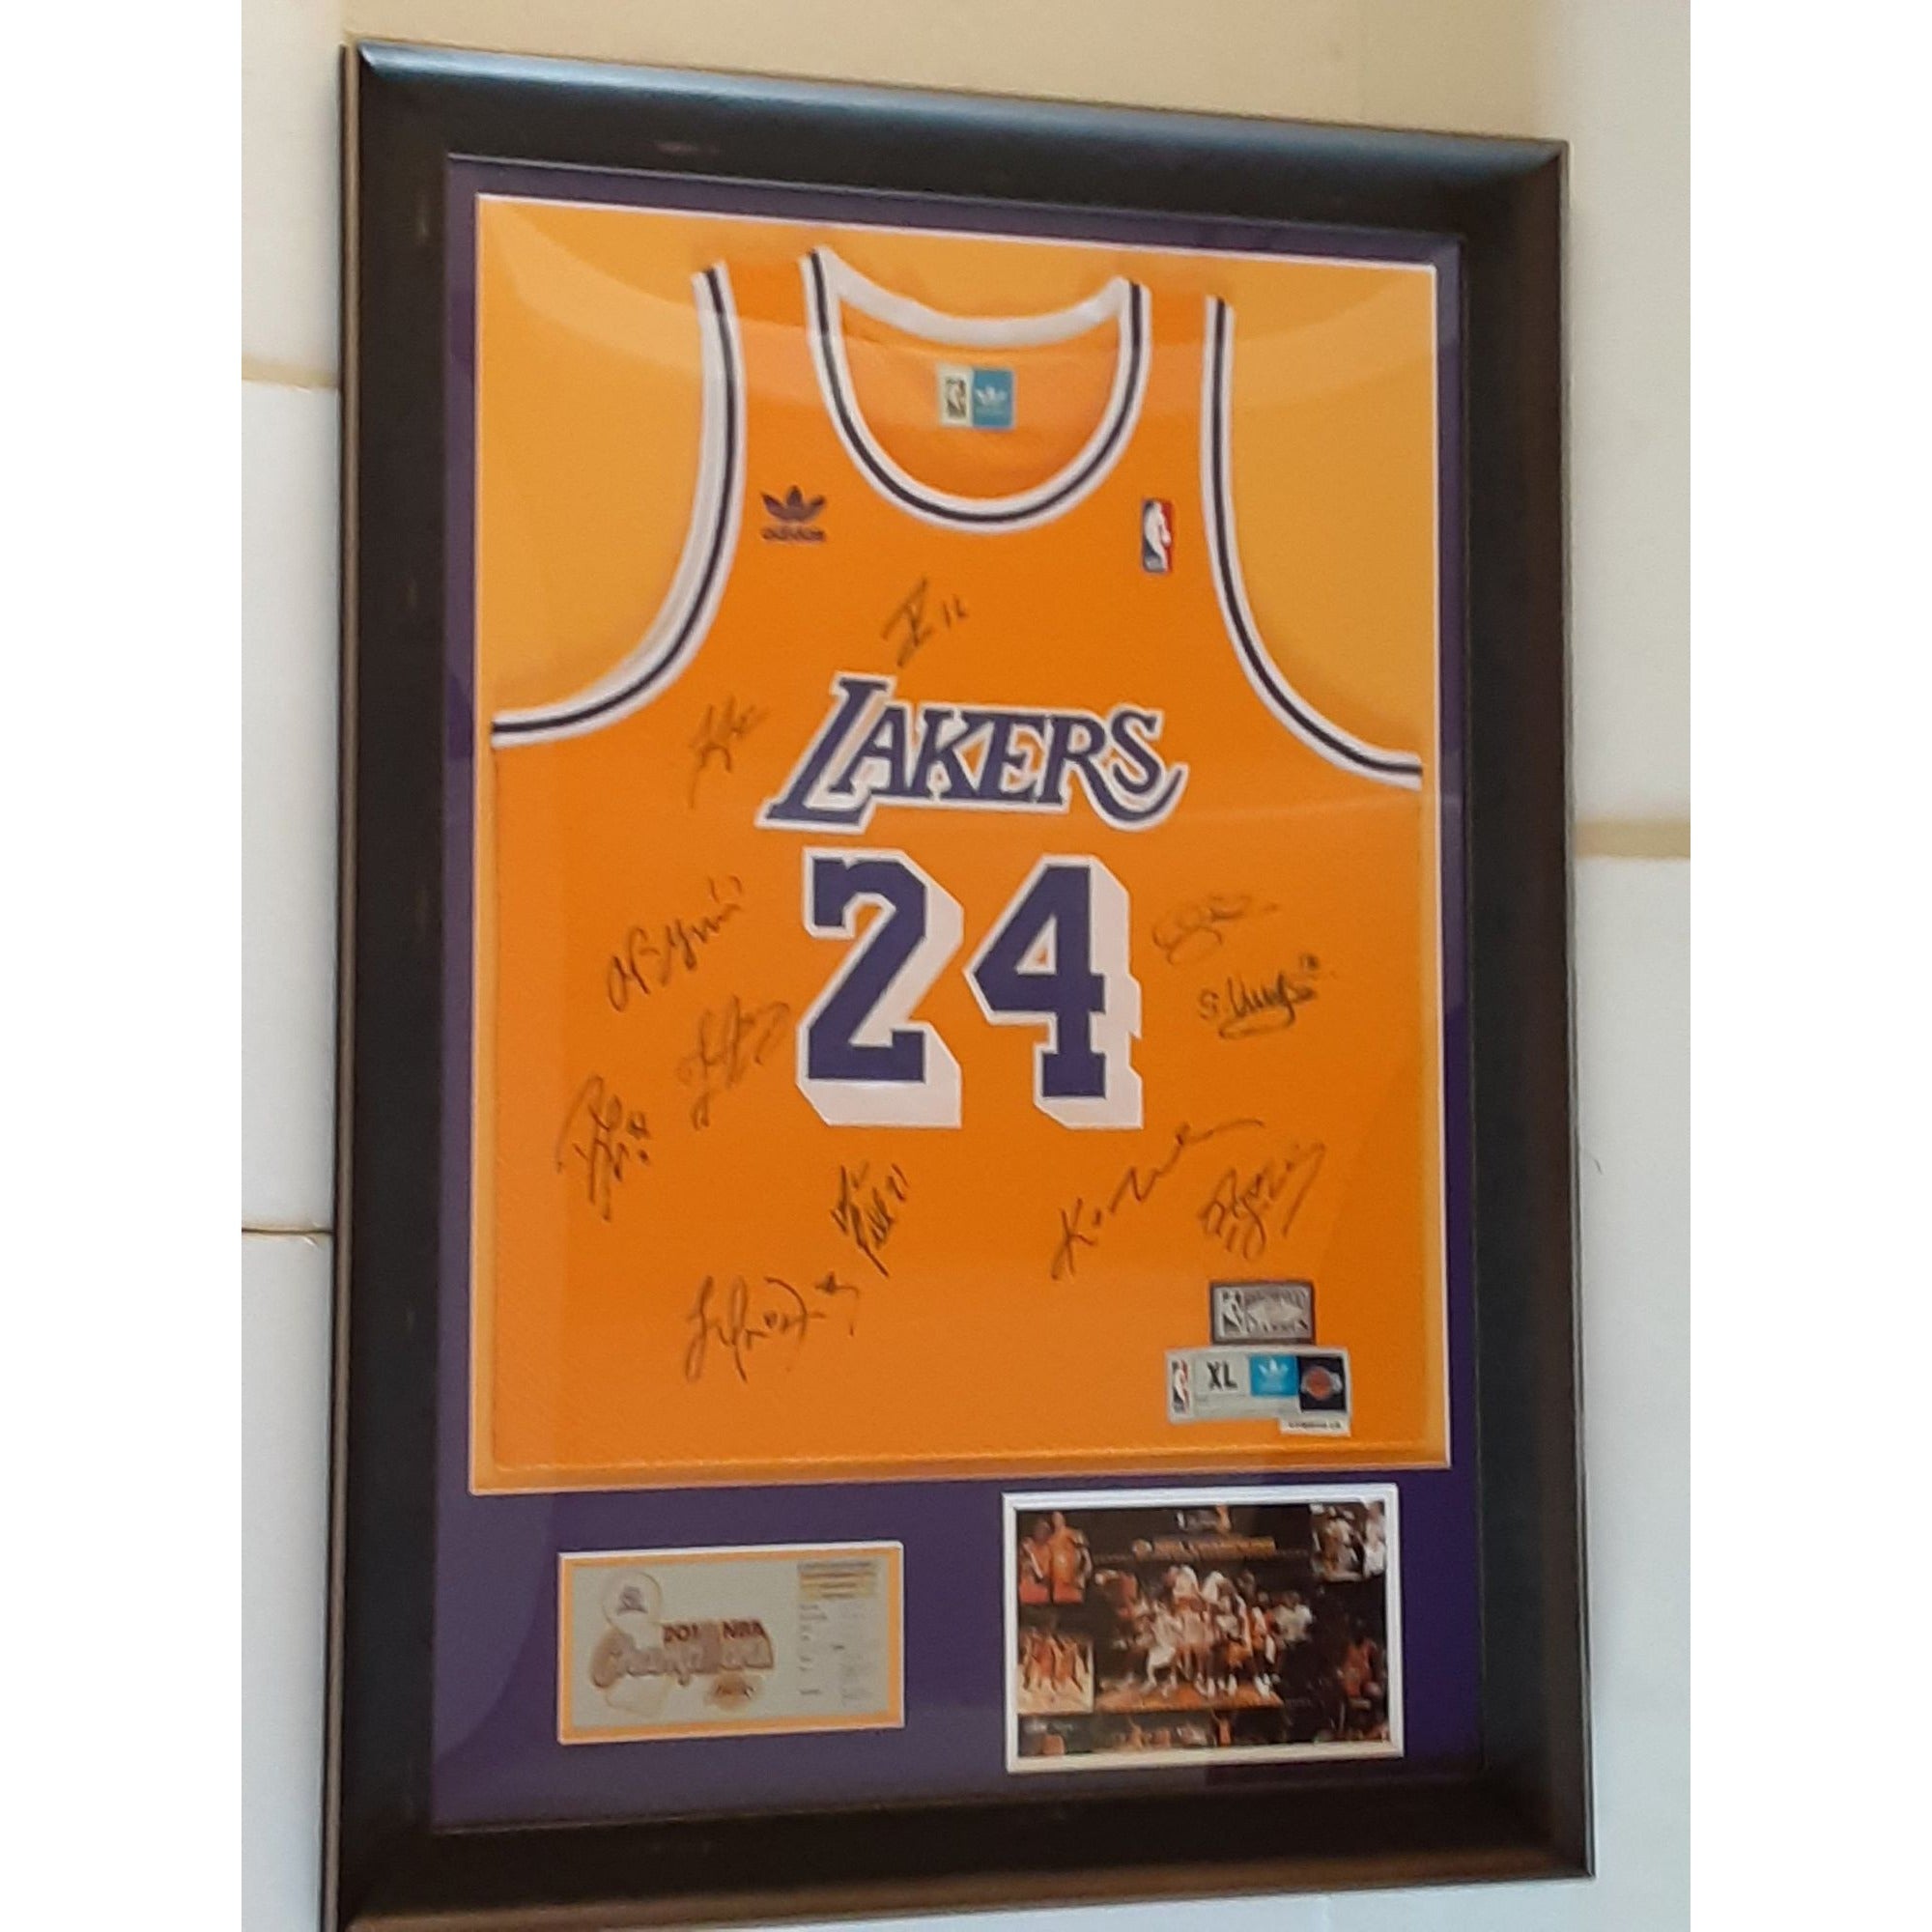 Pau Gasol Lakers jersey, team autographed value